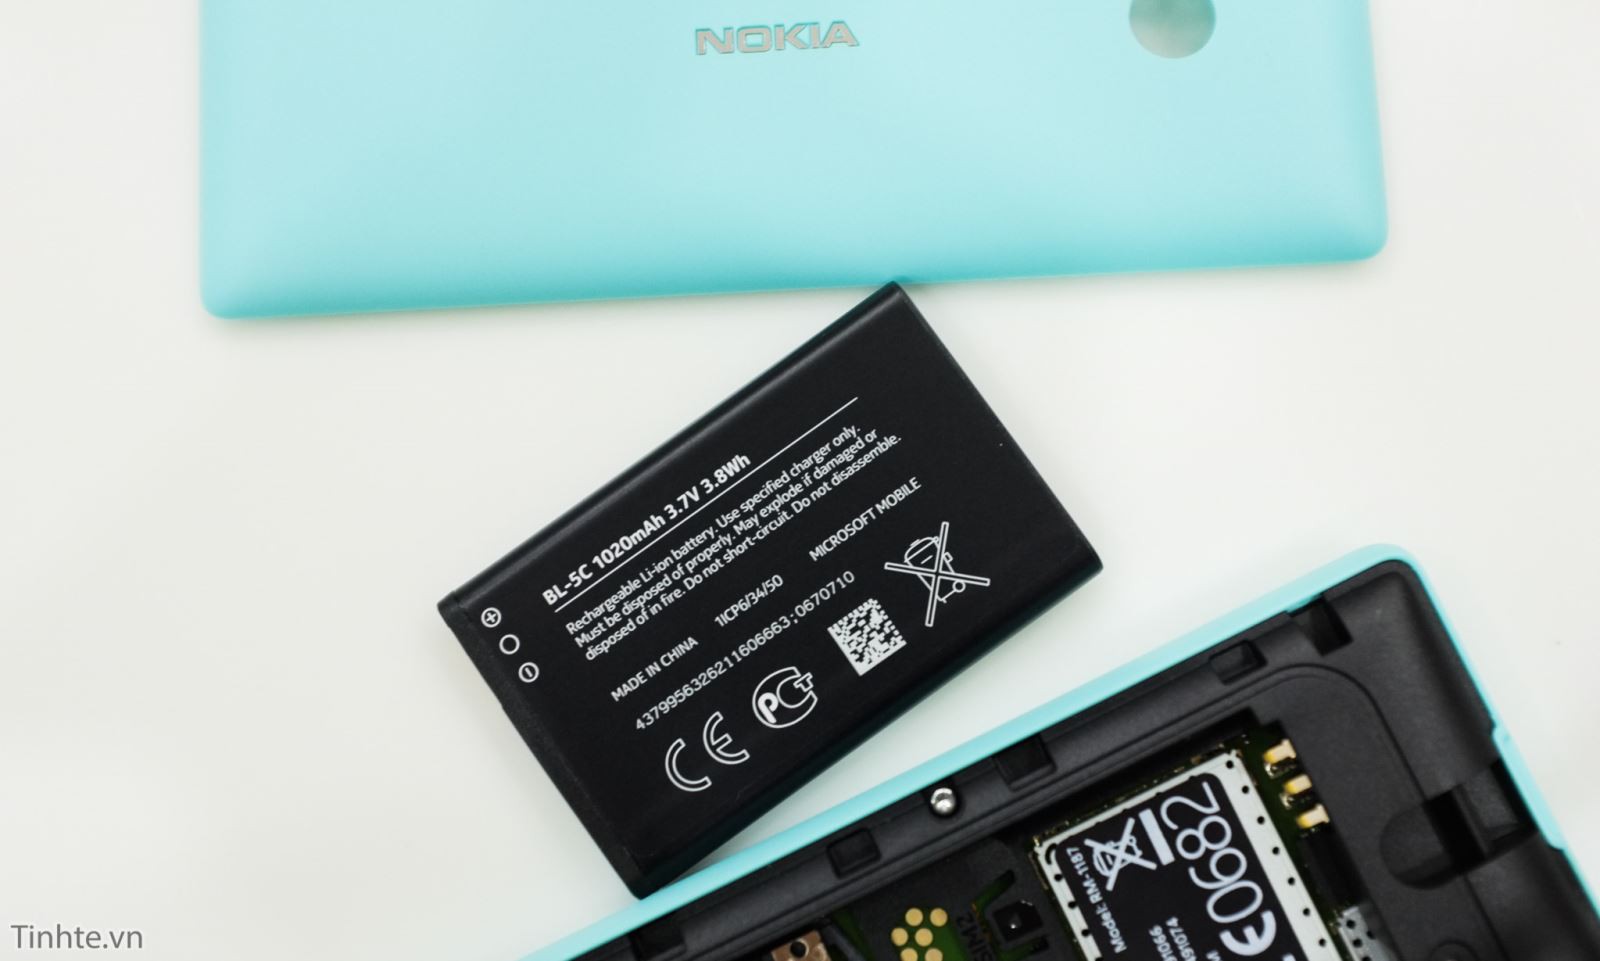 Cận cảnh chiếc Nokia 216 phiên bản màu xanh tuyệt đẹp 5